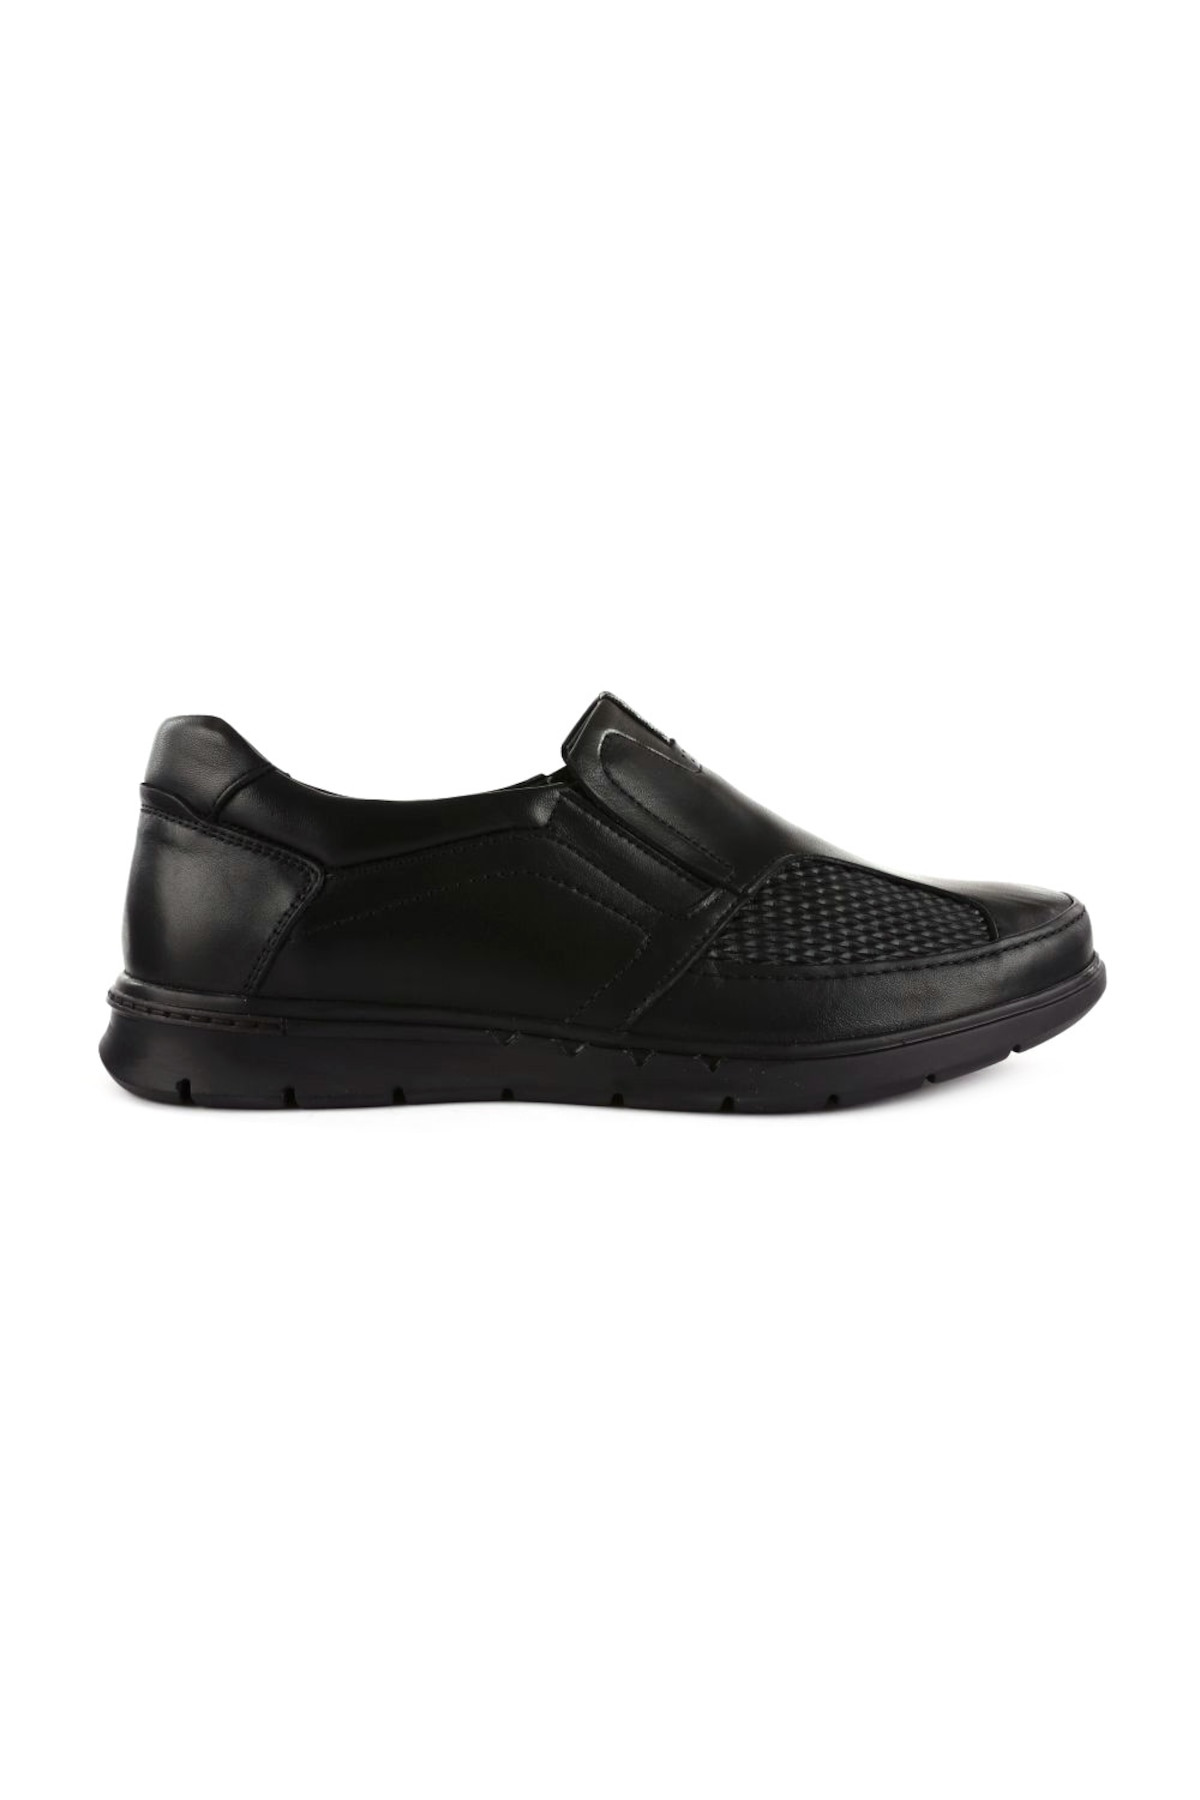 Tarzınızı Yansıtan Şık Tasarımlı DGN Loafer Ayakkabı Modelleri